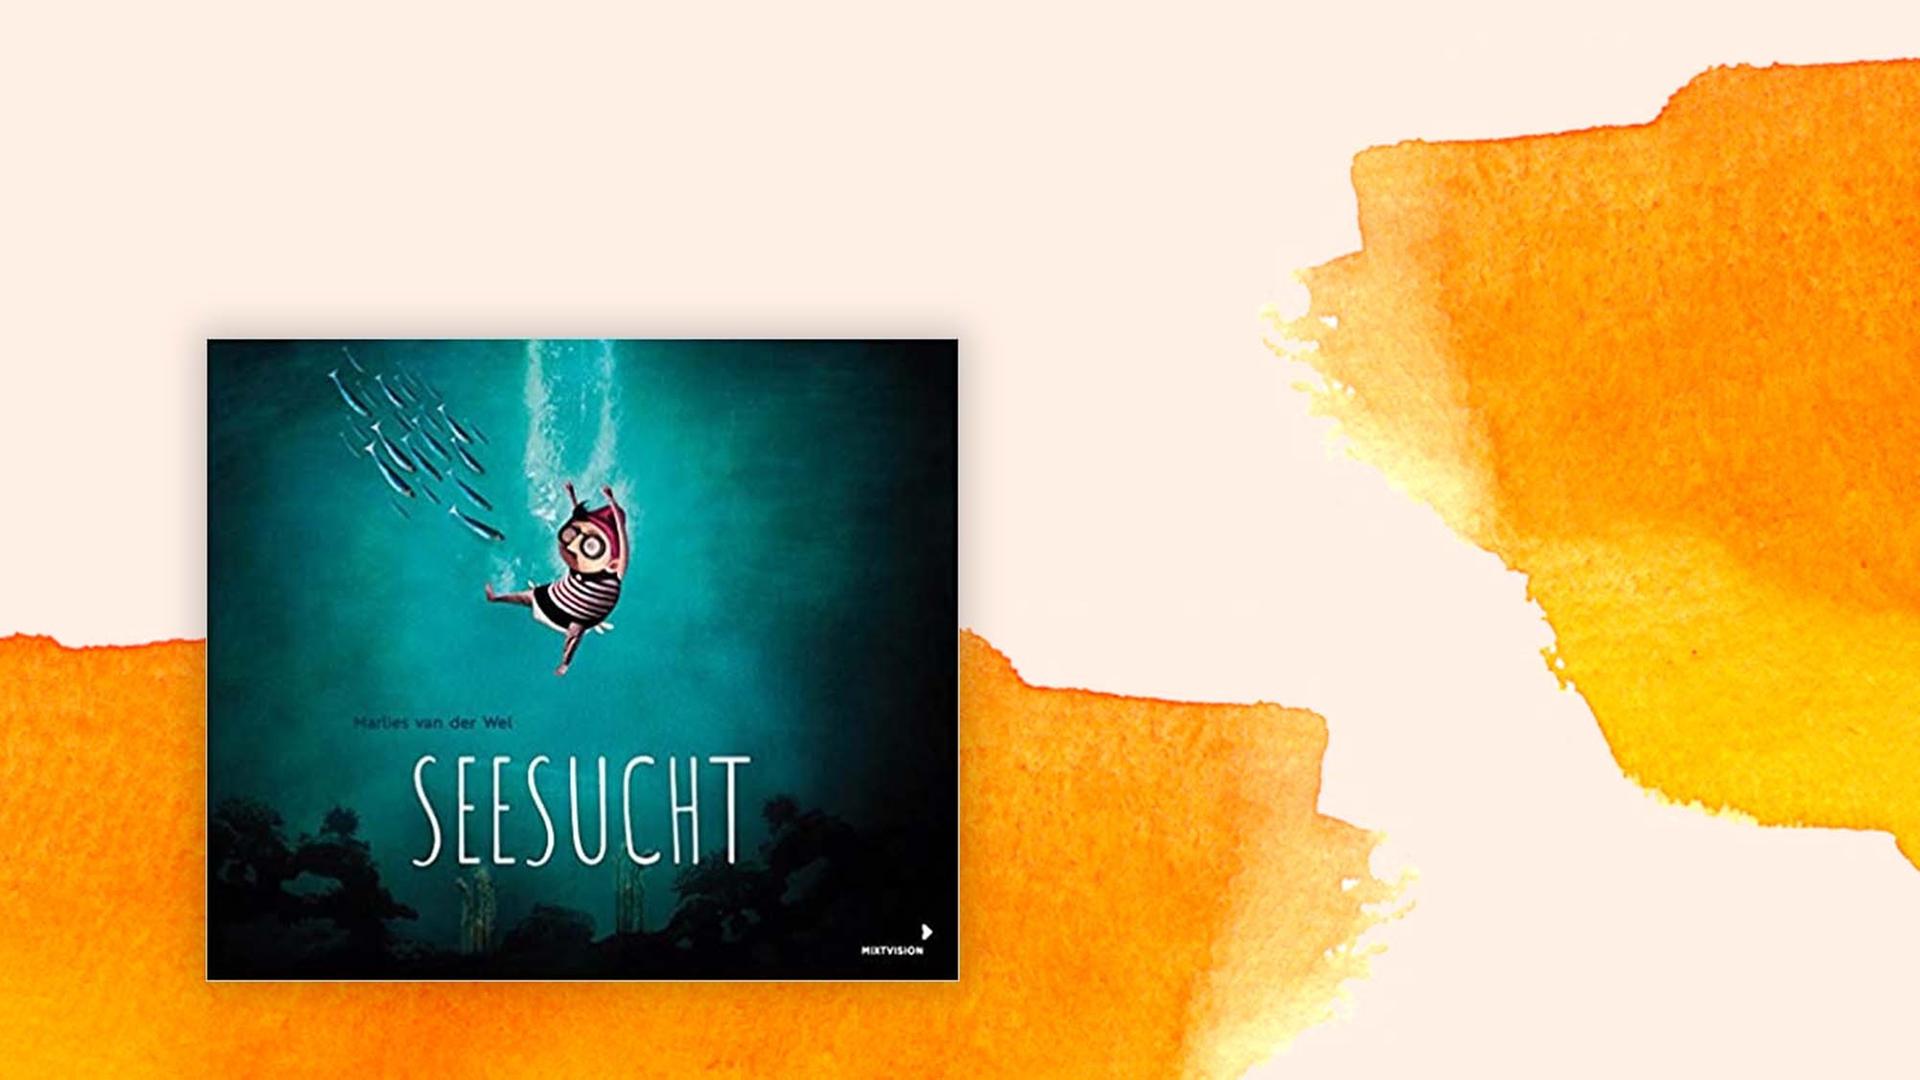 Das Cover des Buchs "Seesucht" von Marlies van der Wel auf pastell farbenen Hintergrund.